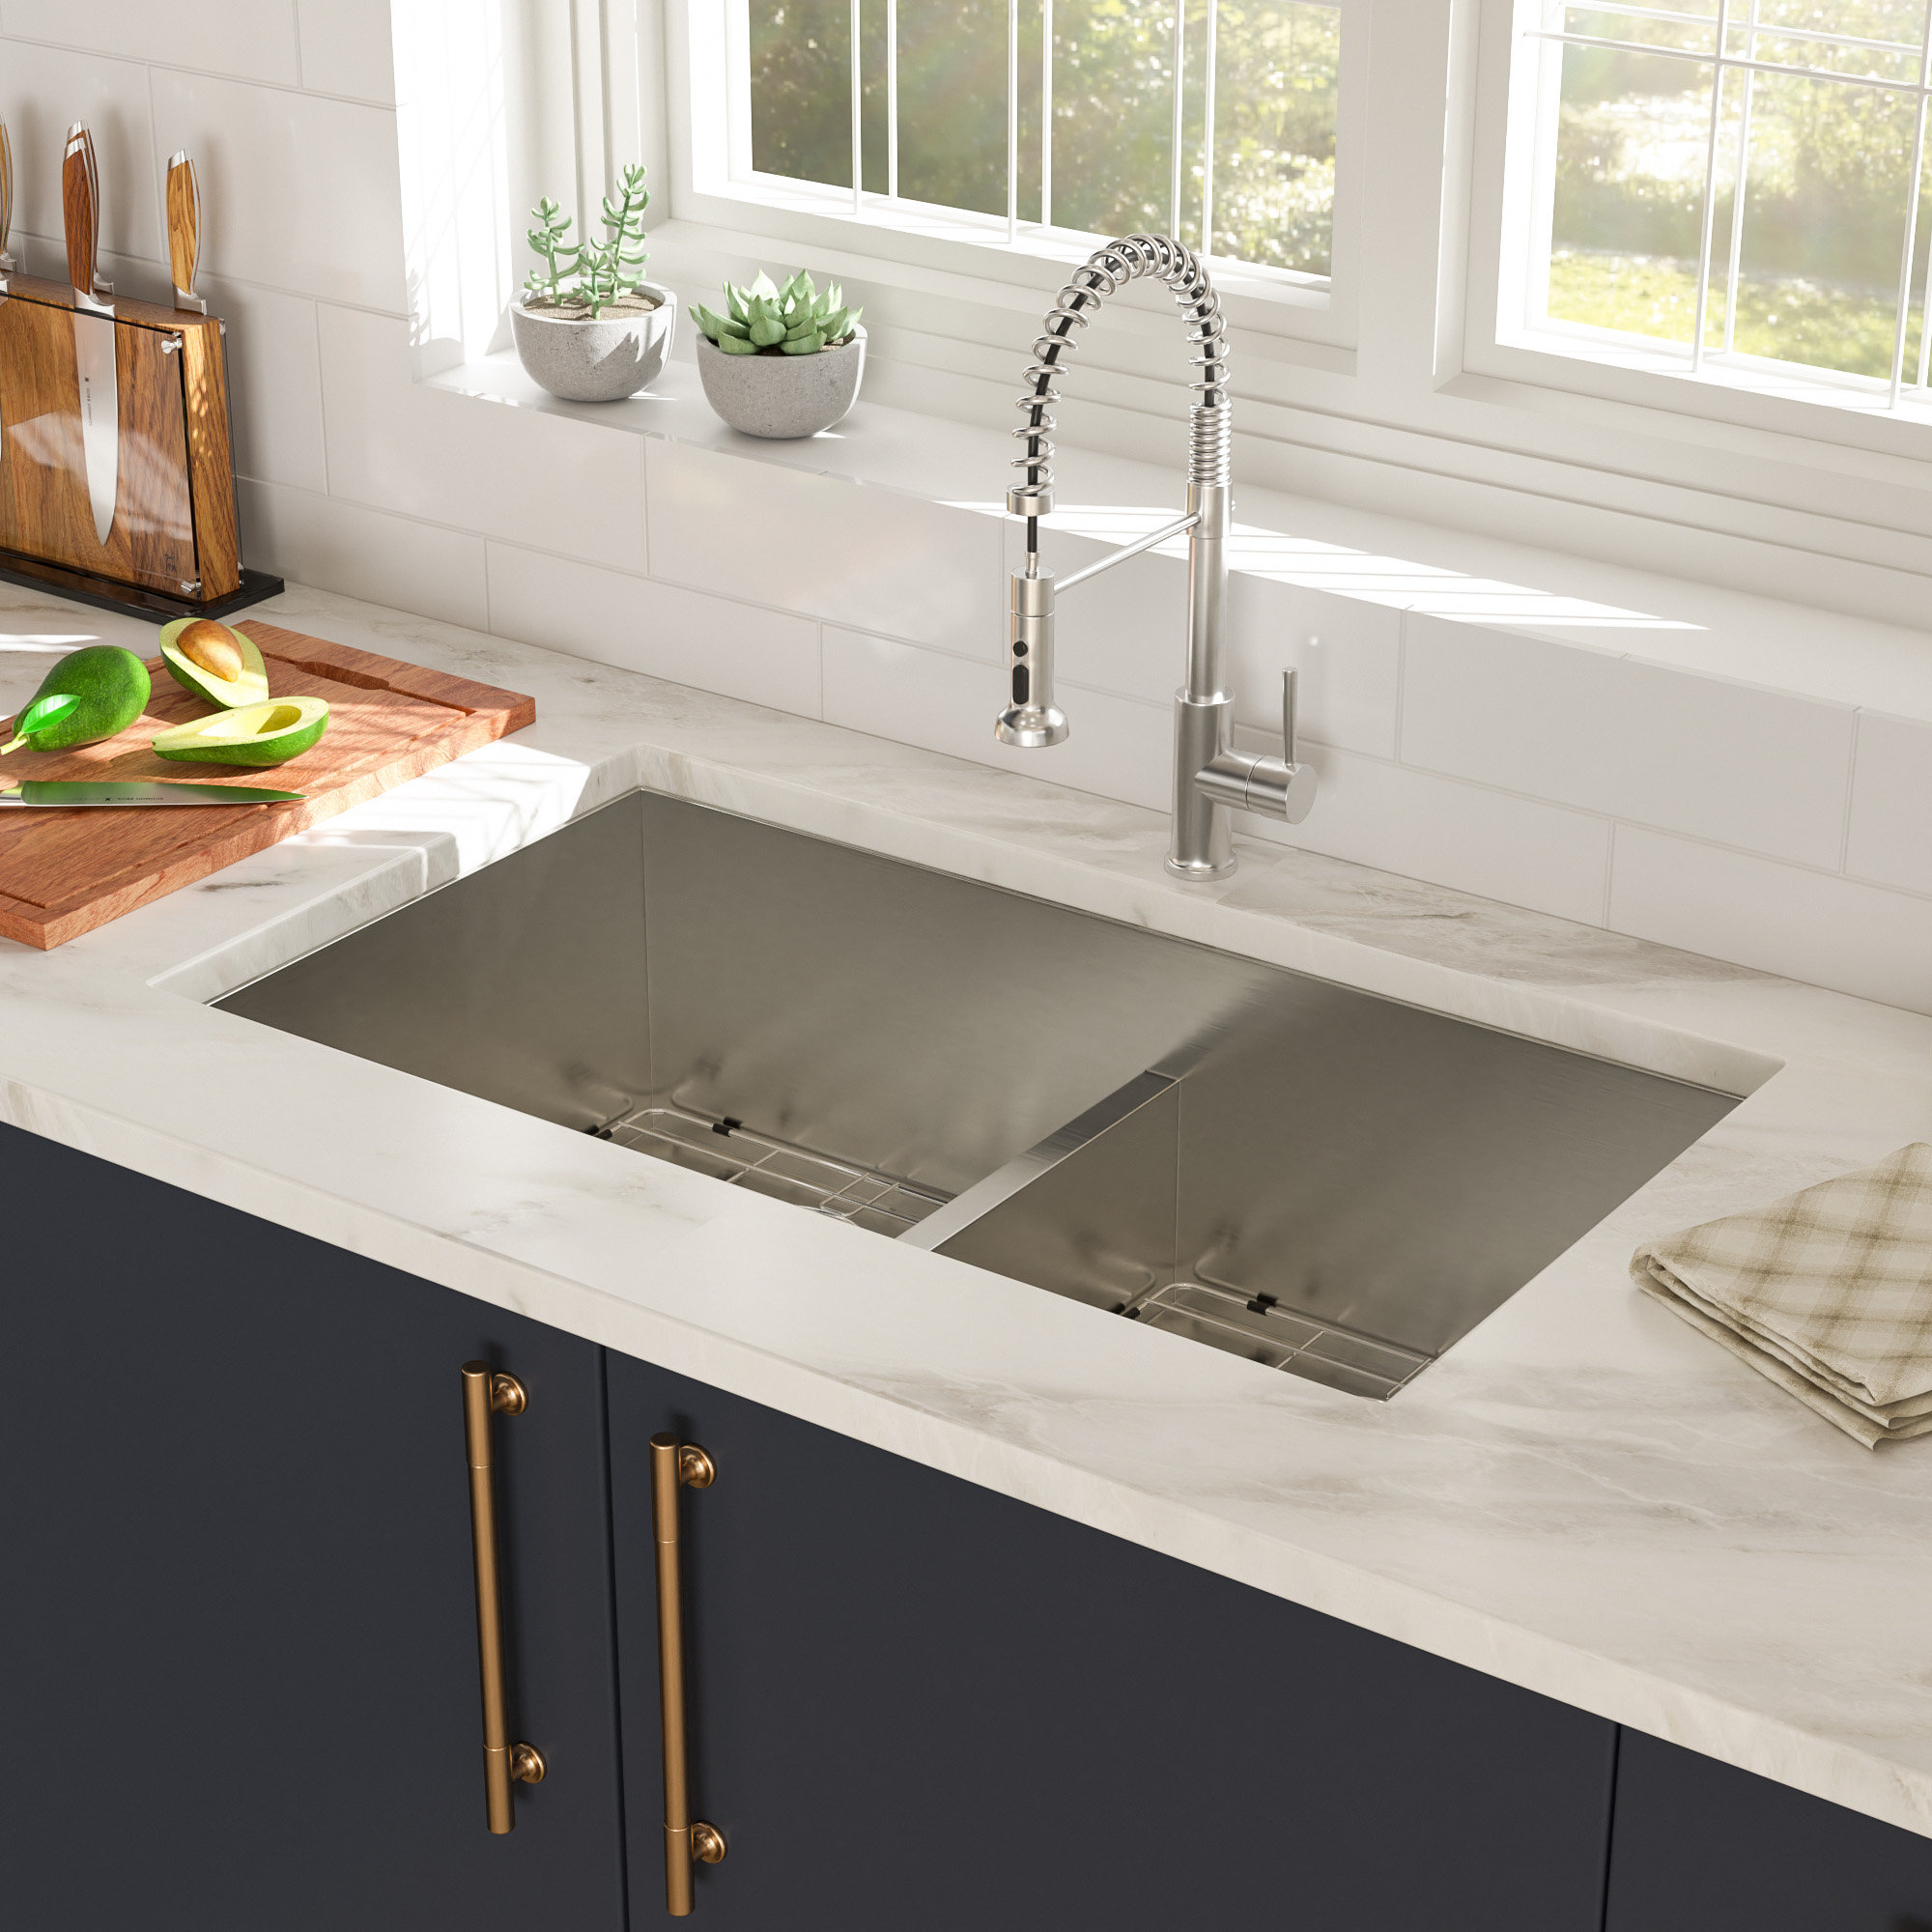 https://assets.wfcdn.com/im/42190429/compr-r85/2557/255704073/33-l-undermount-double-bowl-stainless-steel-kitchen-sink.jpg